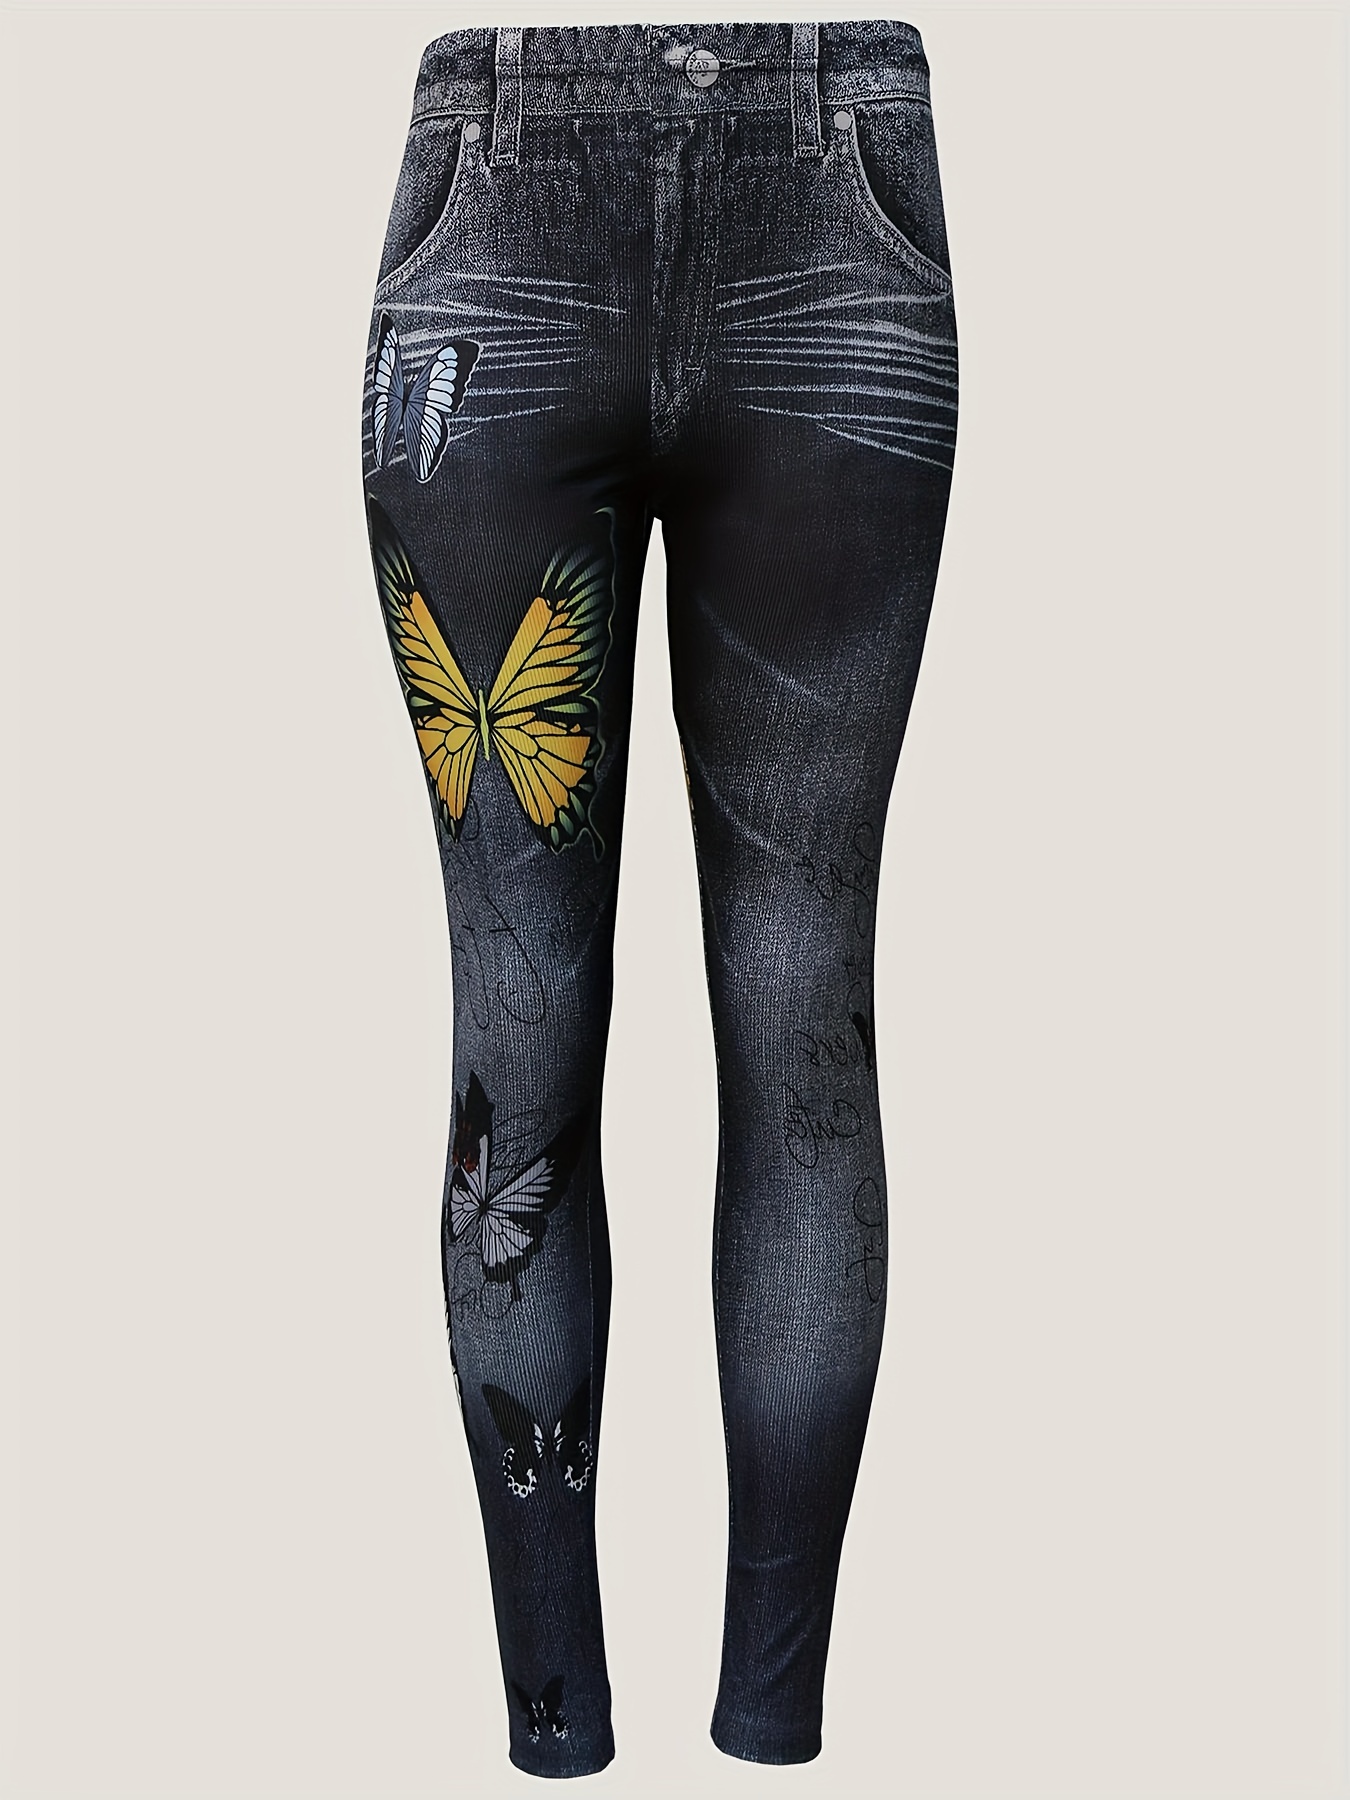 ZDFER Women's Butterfly Print Leggings High Waist Stretch Soft